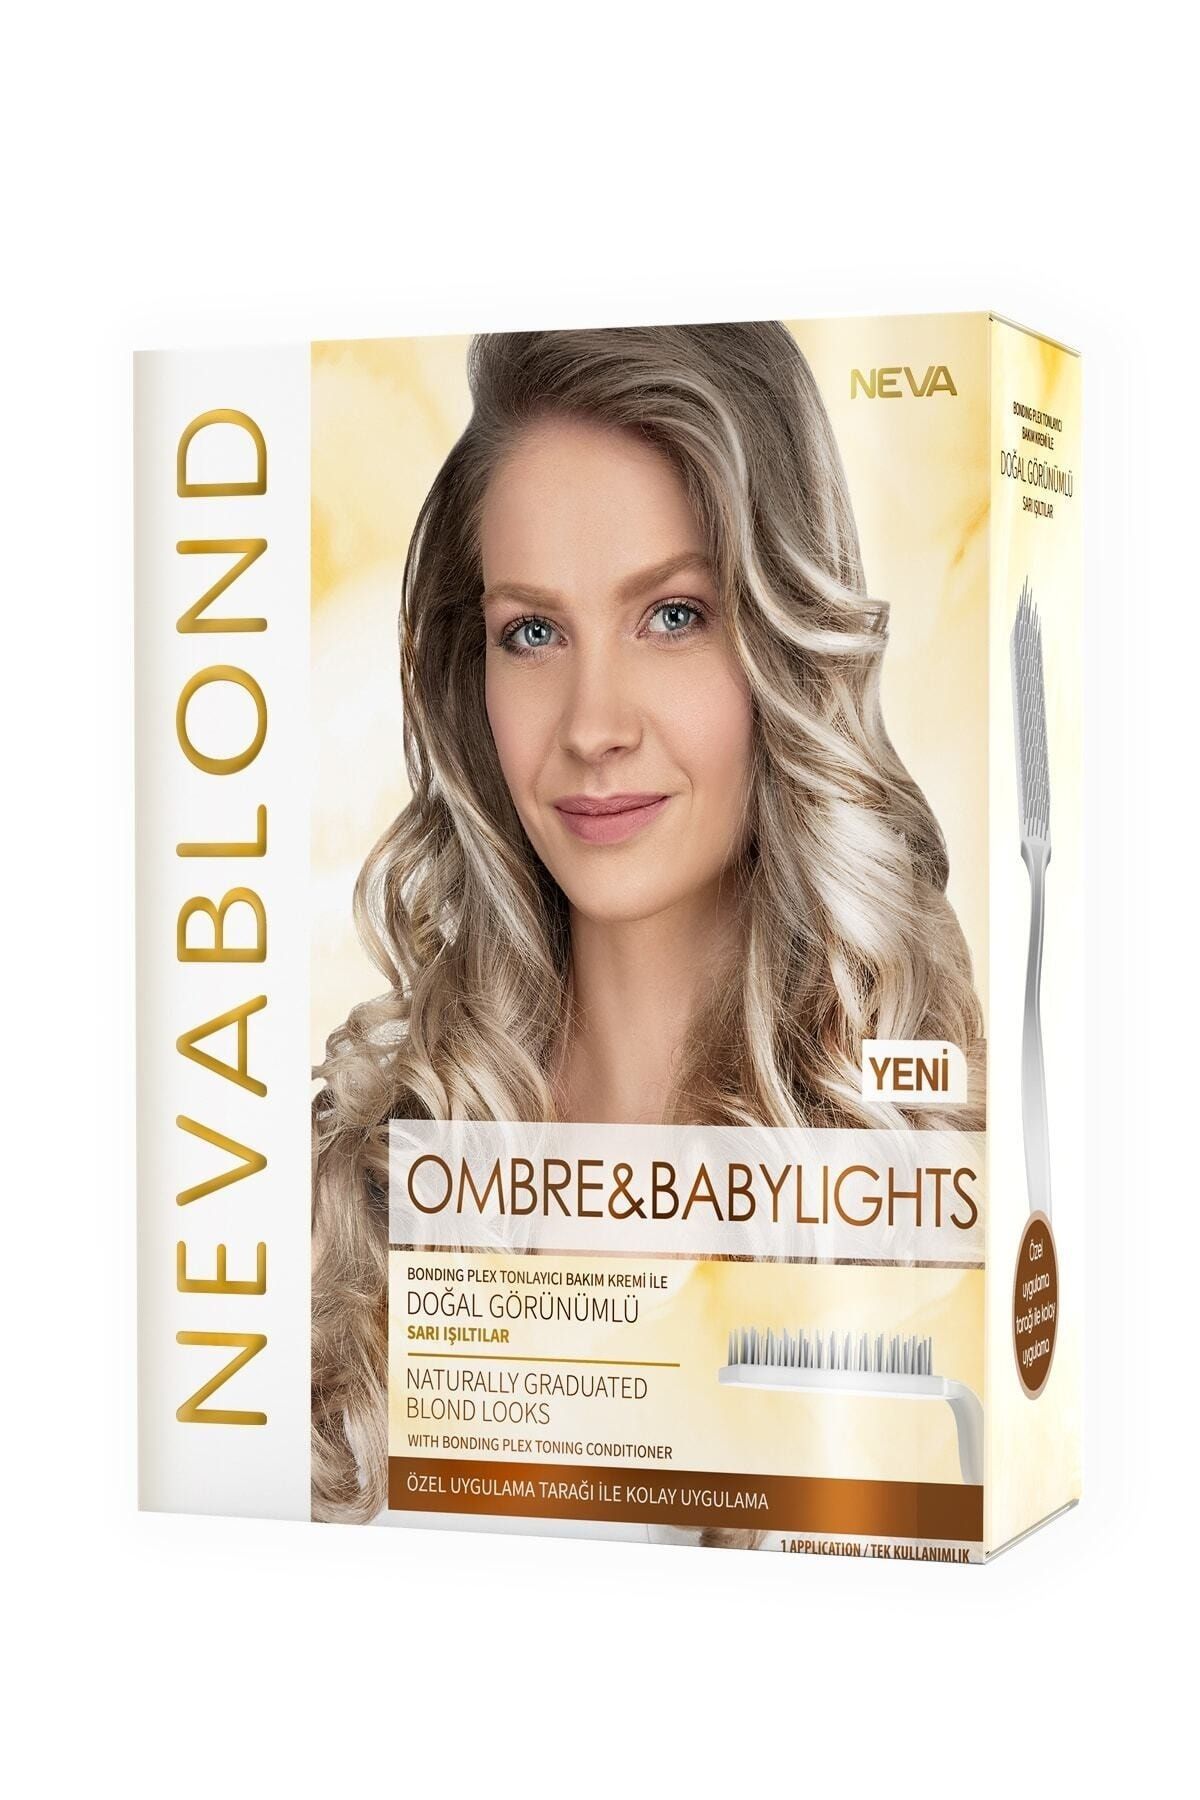 Nevablond Neva Blond Ultımate Ombre & Babylights 30gr Set